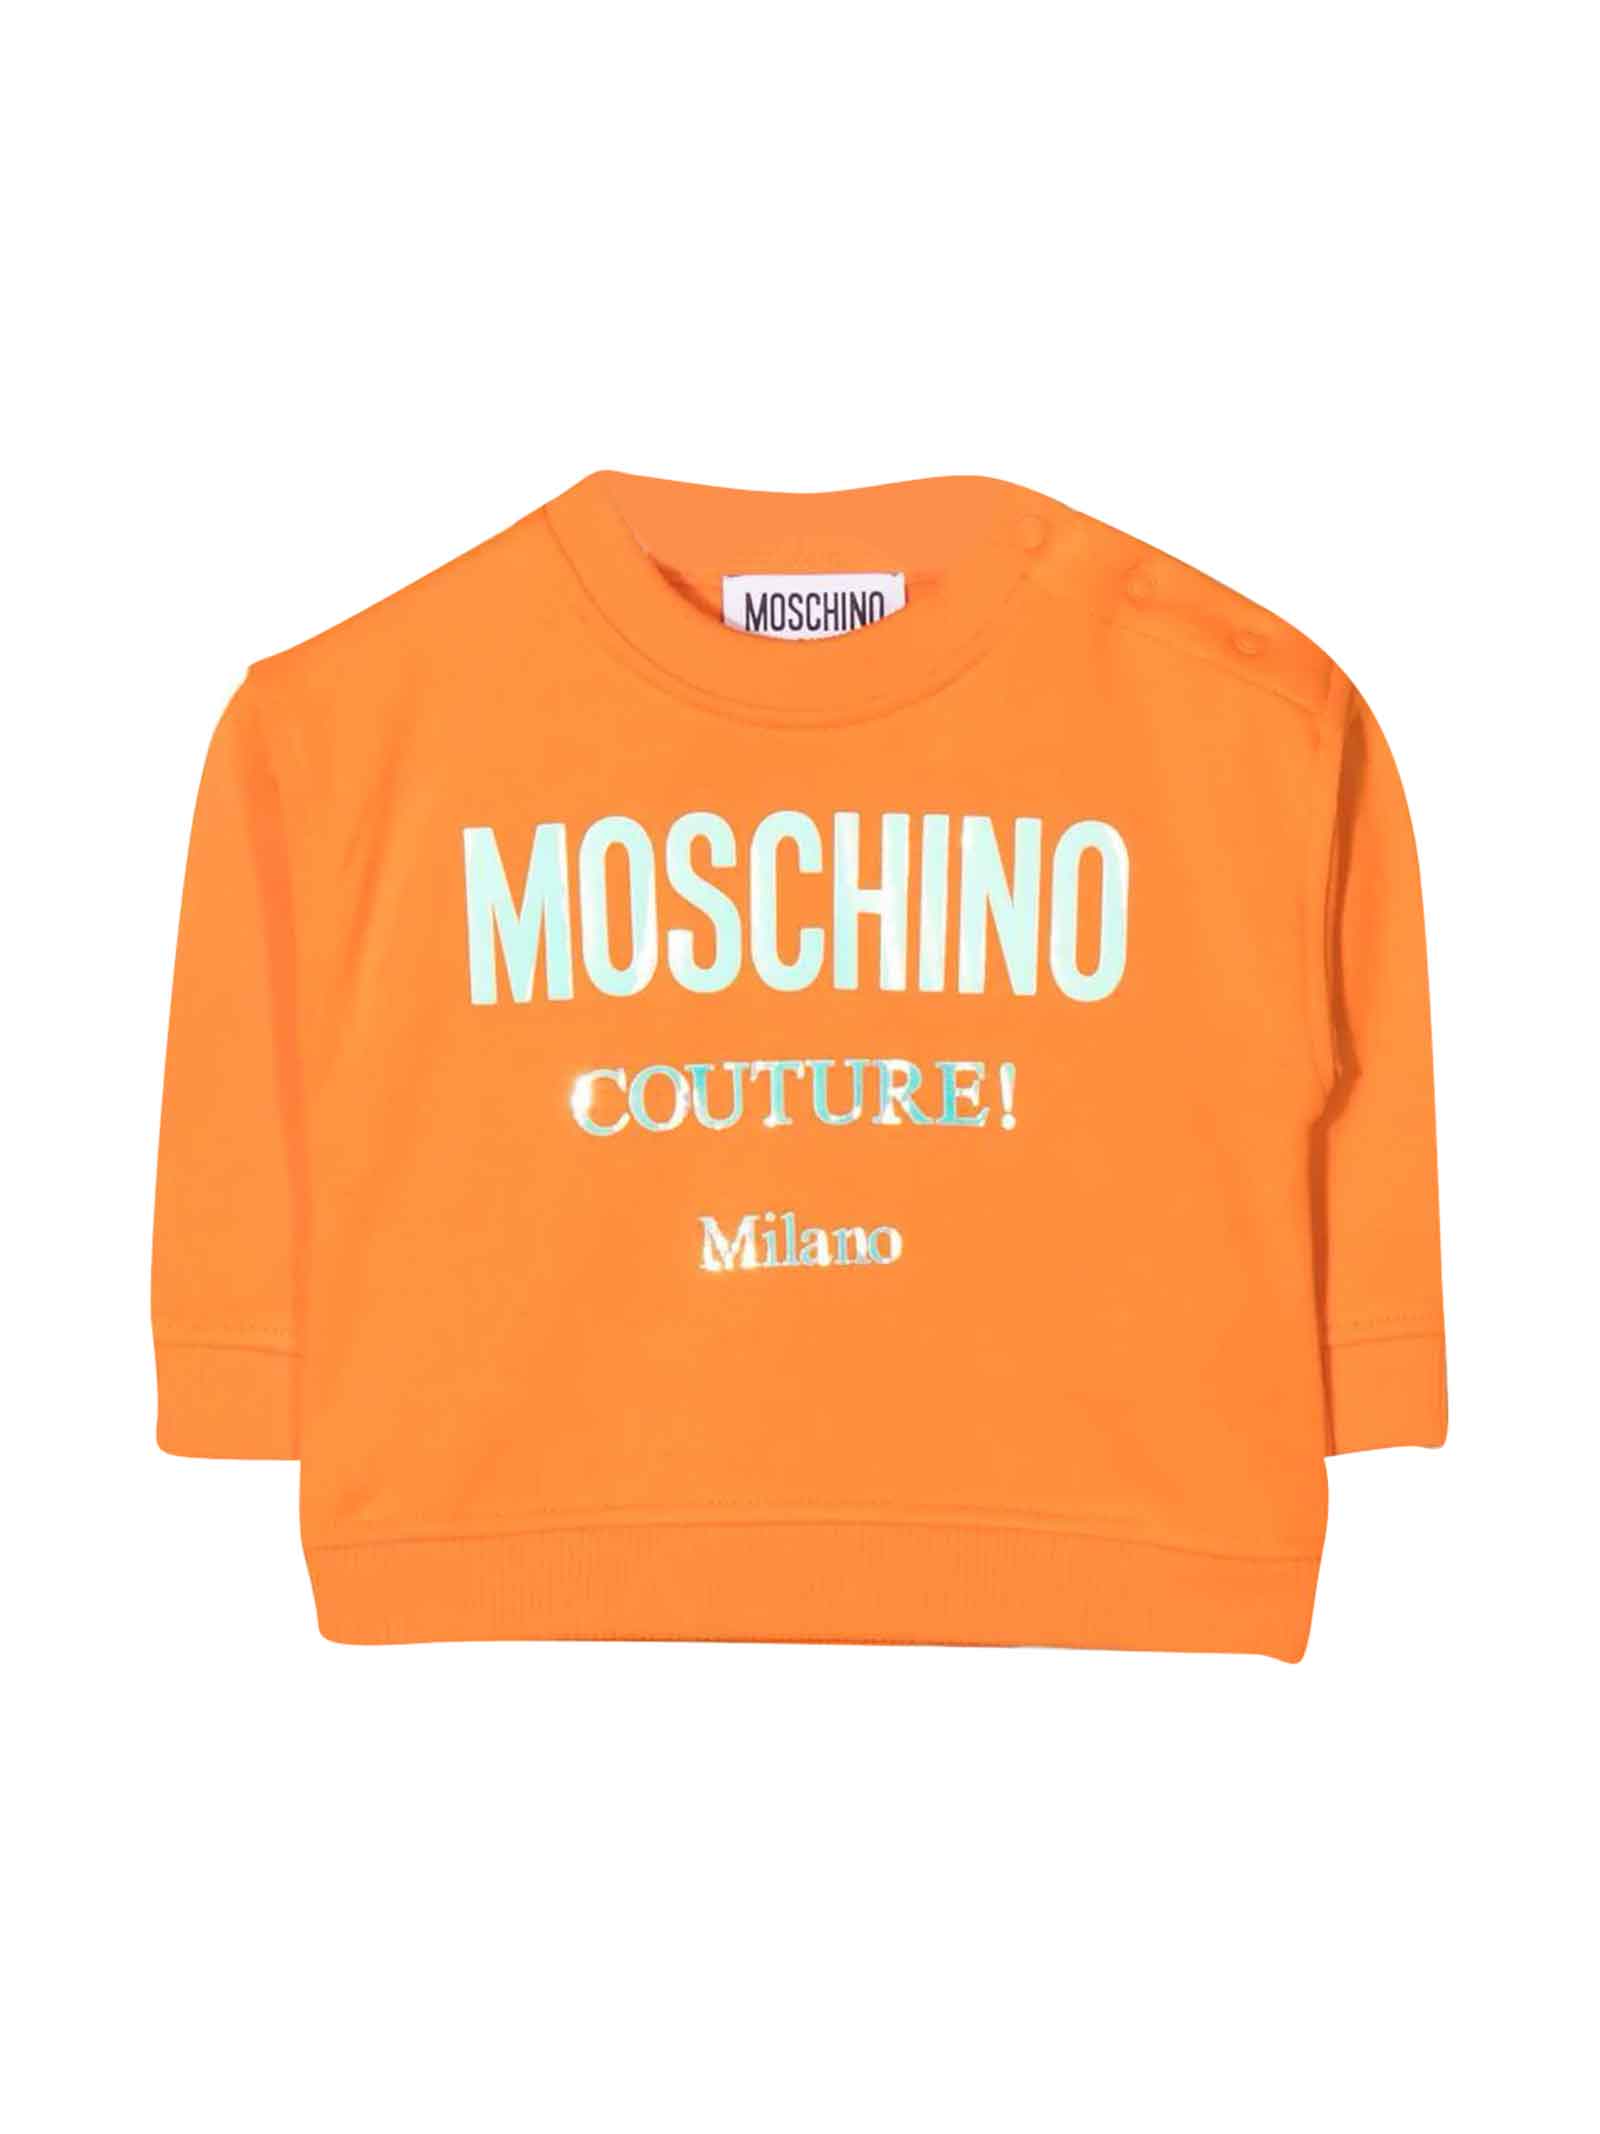 Moschino Orange Sweatshirt Baby Unisex